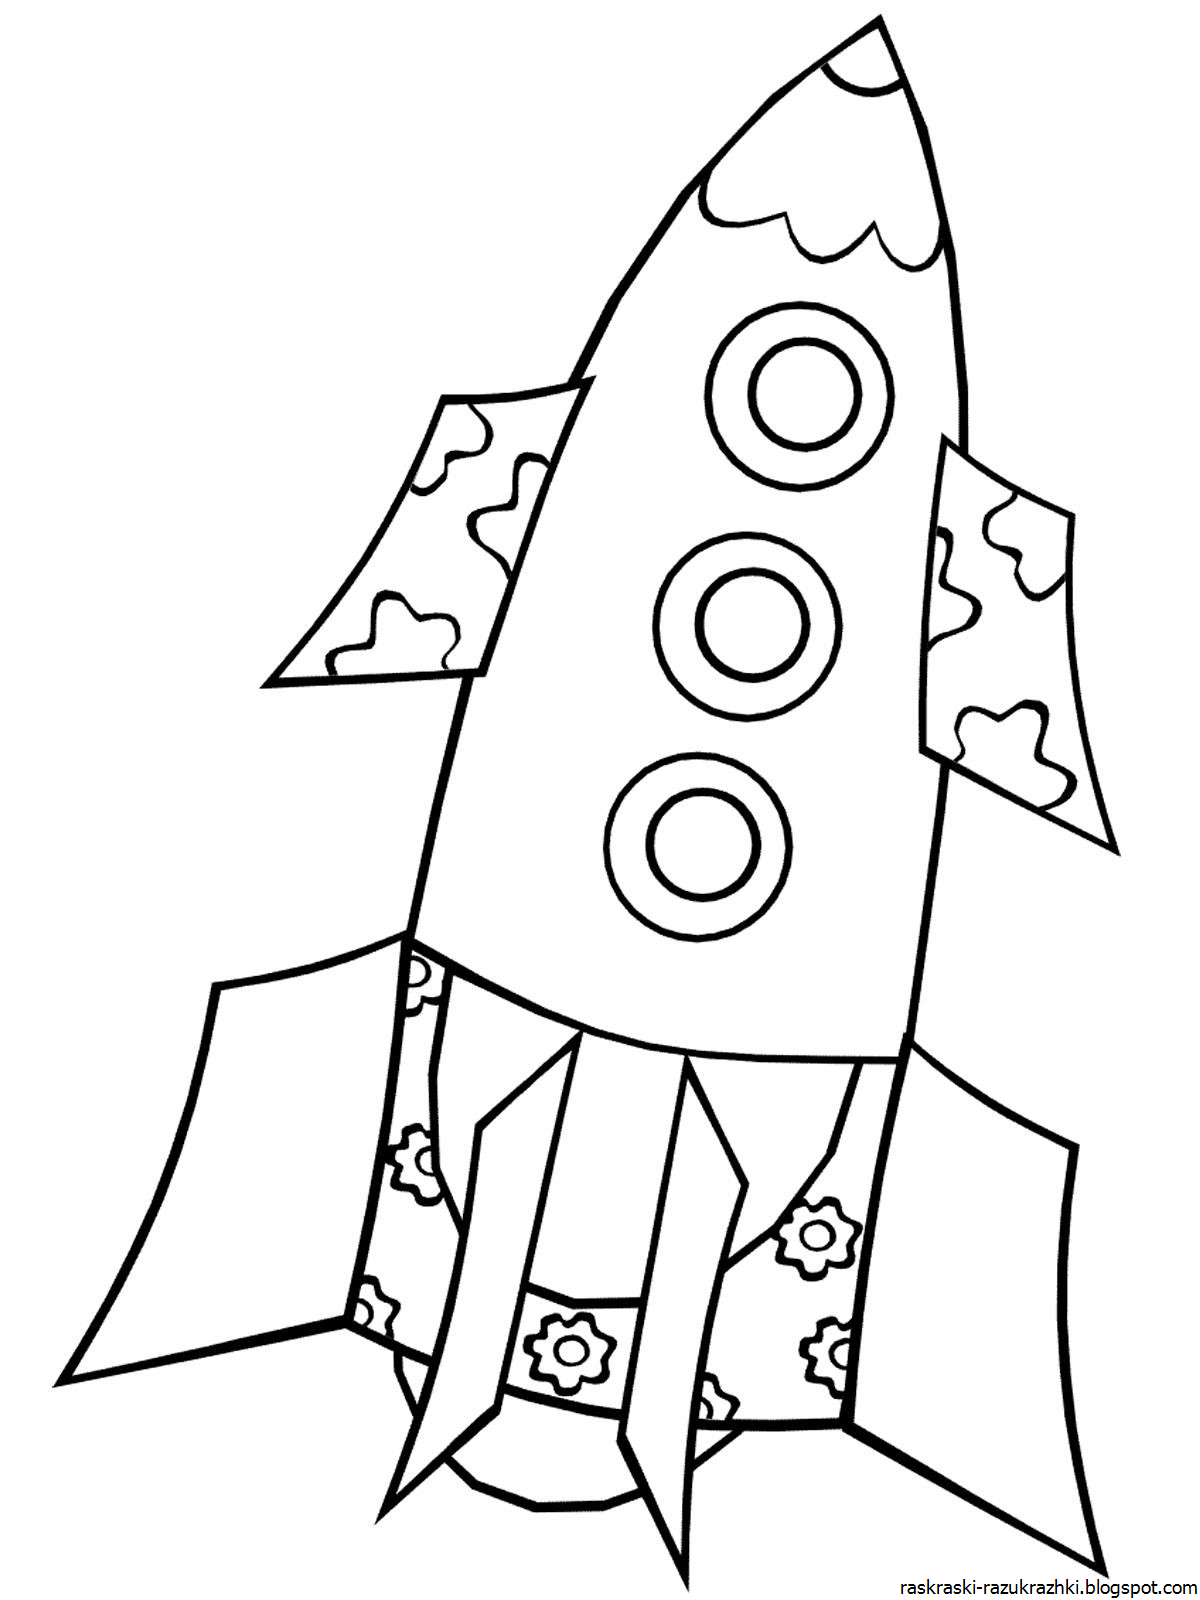 Ракета раскраска. Космический корабль раскраска для детей. Космическая ракета раскраска. Ракета рисунок для детей. Трафарет ракеты для вырезания из бумаги шаблоны